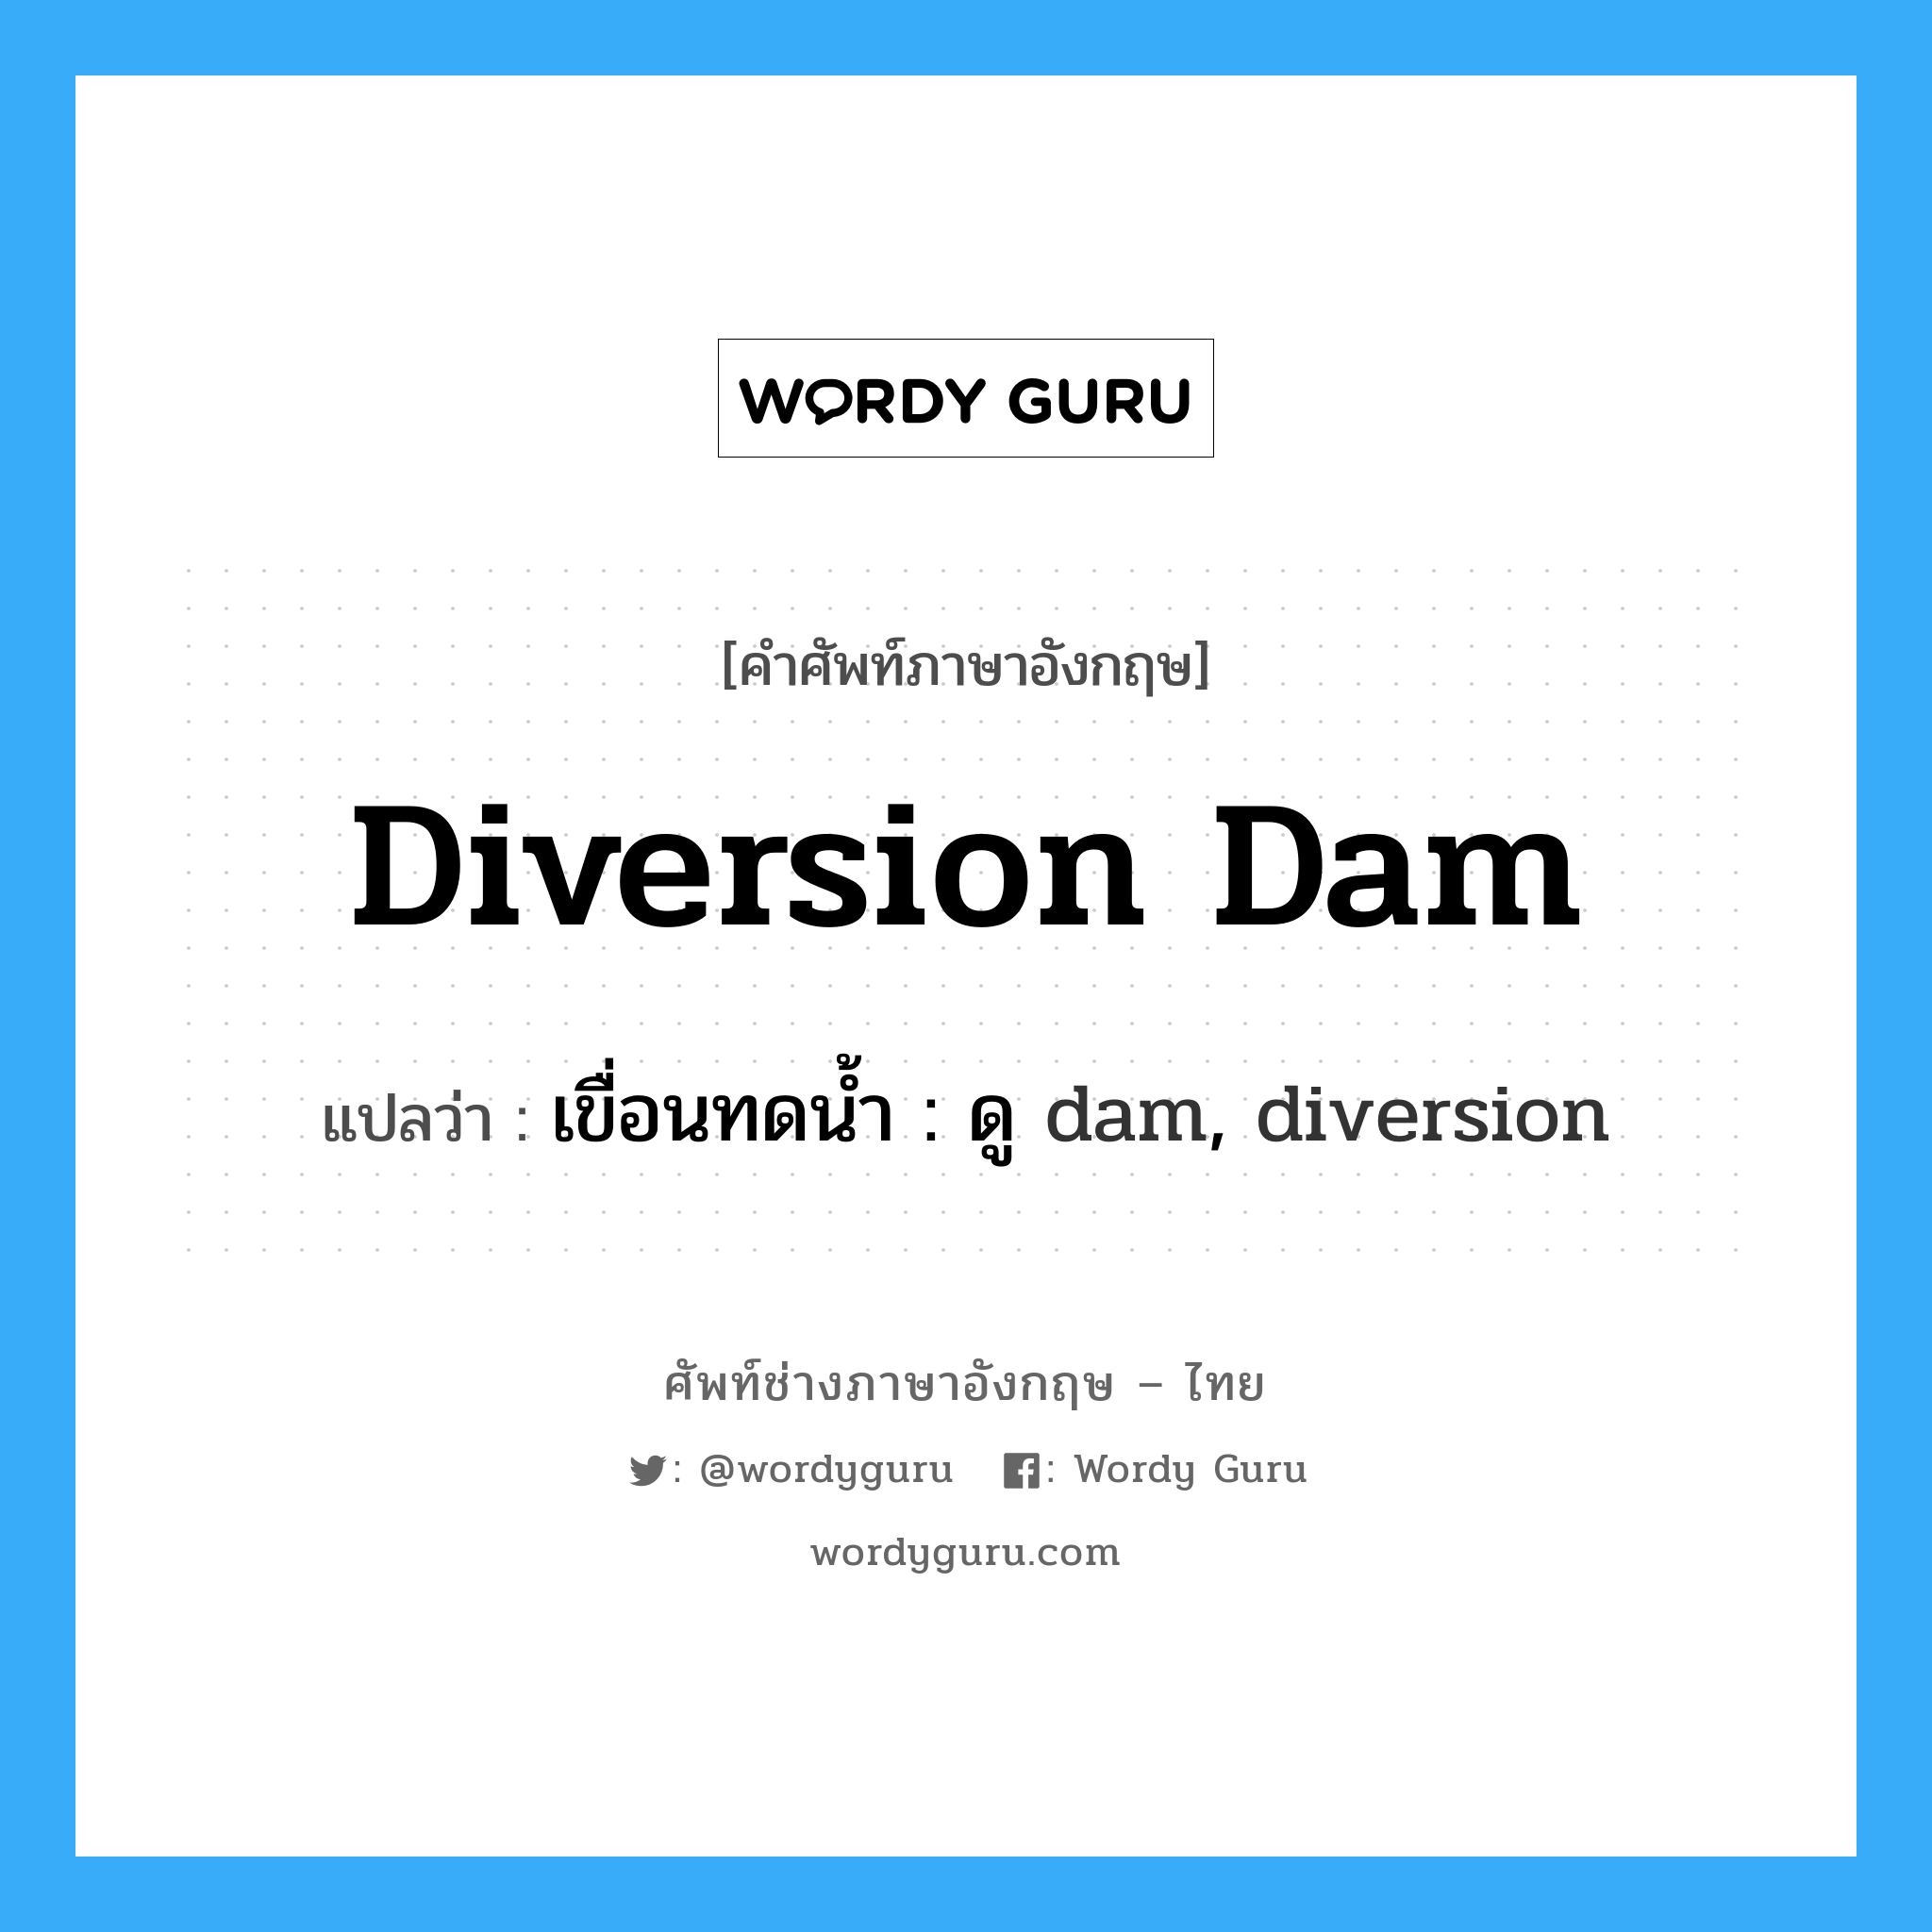 เขื่อนทดน้ำ : ดู dam, diversion ภาษาอังกฤษ?, คำศัพท์ช่างภาษาอังกฤษ - ไทย เขื่อนทดน้ำ : ดู dam, diversion คำศัพท์ภาษาอังกฤษ เขื่อนทดน้ำ : ดู dam, diversion แปลว่า diversion dam